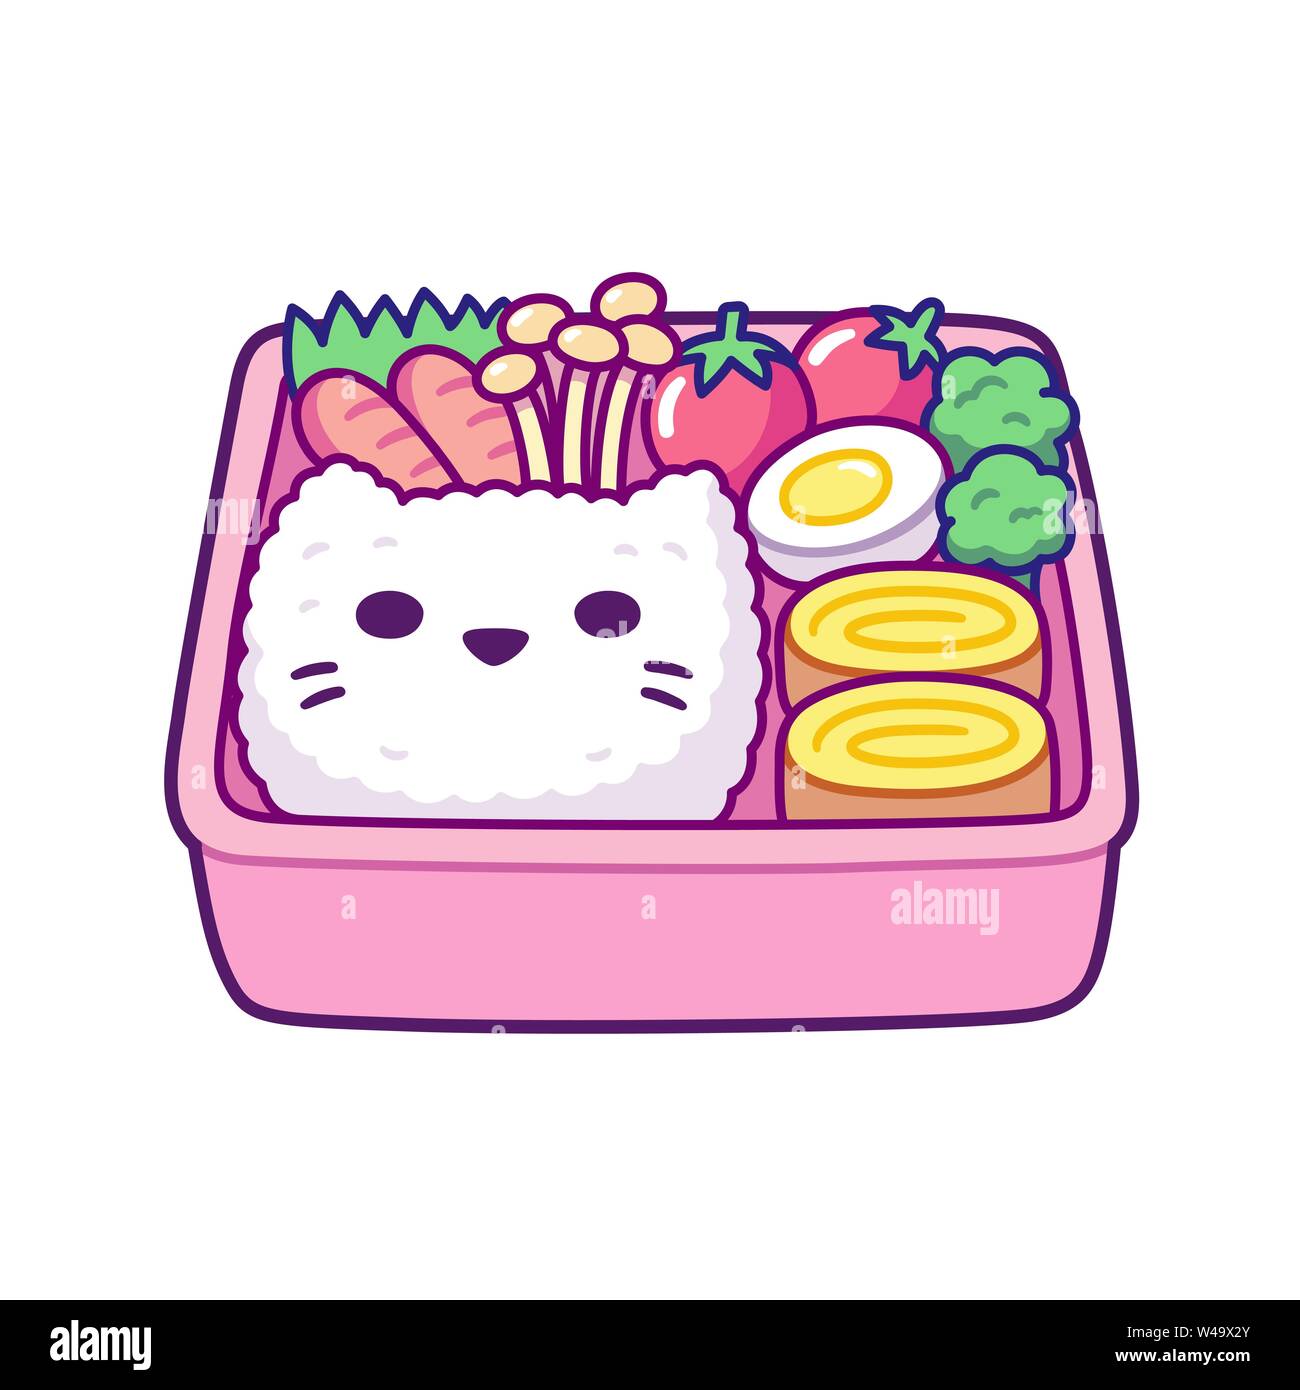 Cute cartoon bento box Mit cat face geformte Reis, Frühlingsrollen, Pilzen und Gemüse. Traditionelle japanische Lunchbox für Kinder. Einfache Hand gezeichnet vecto Stock Vektor